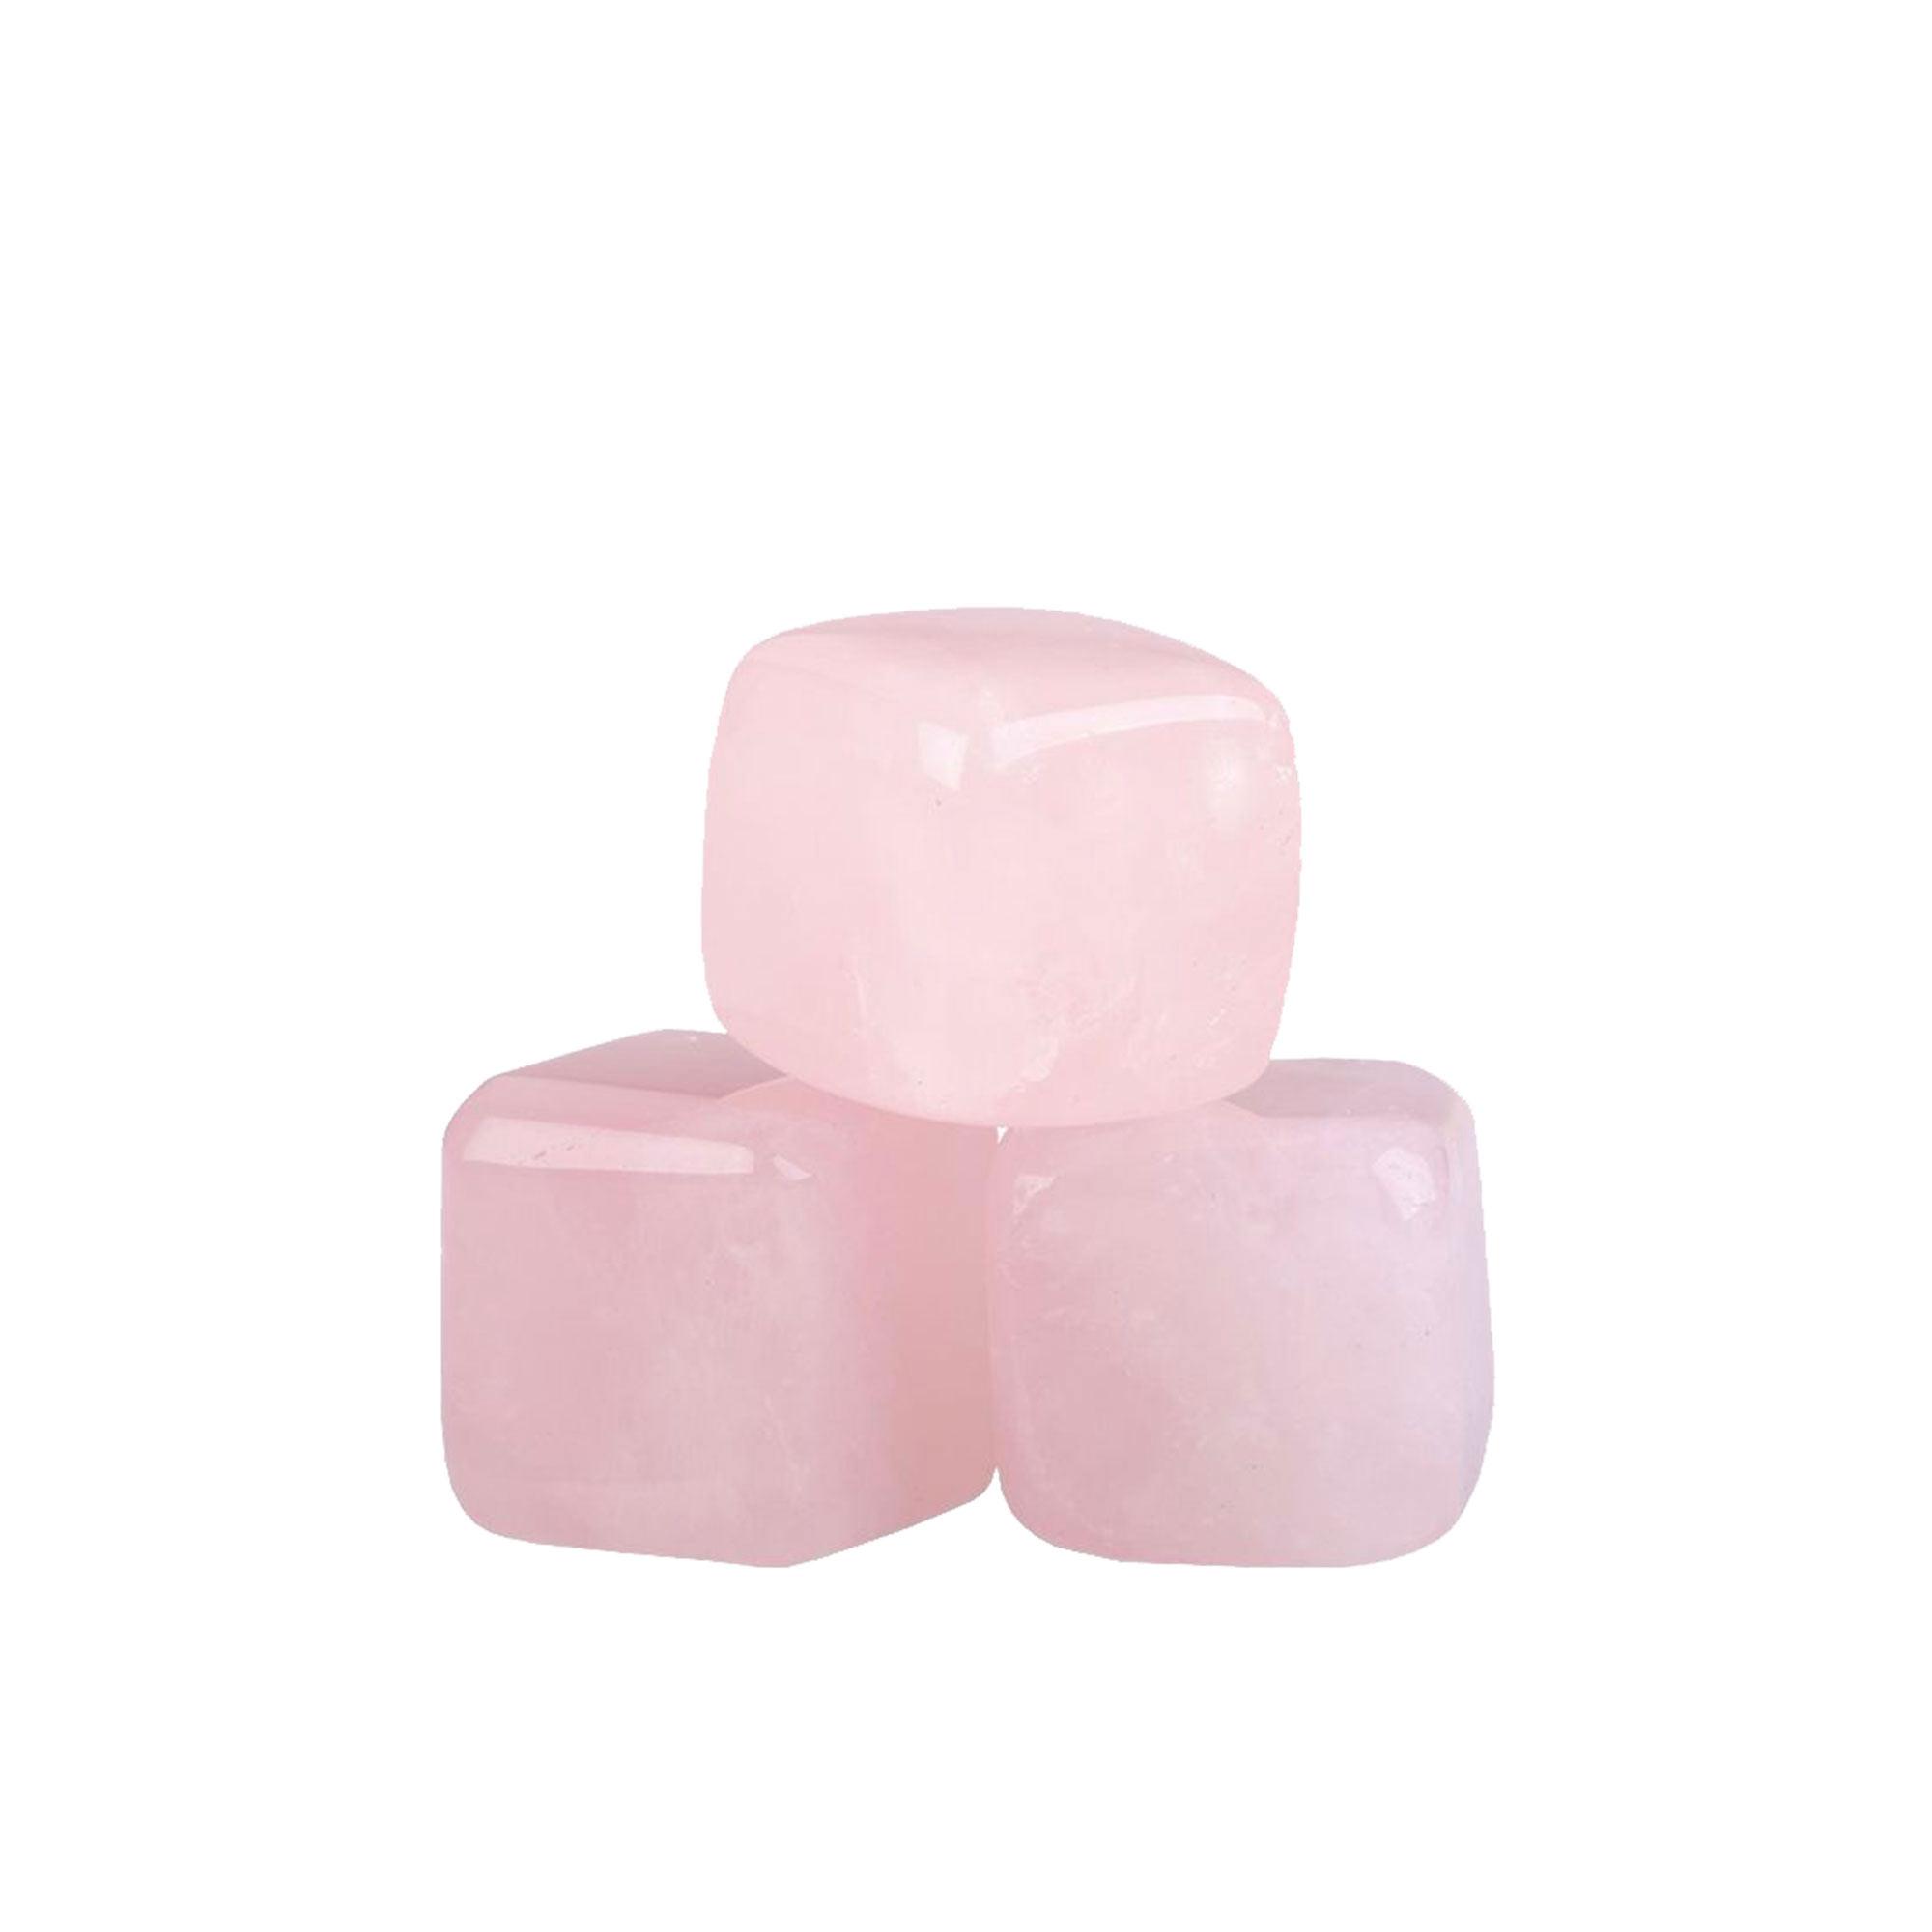 Bartender Rose Quartz Gin Stones with Bag Set of 6 Pink Image 5